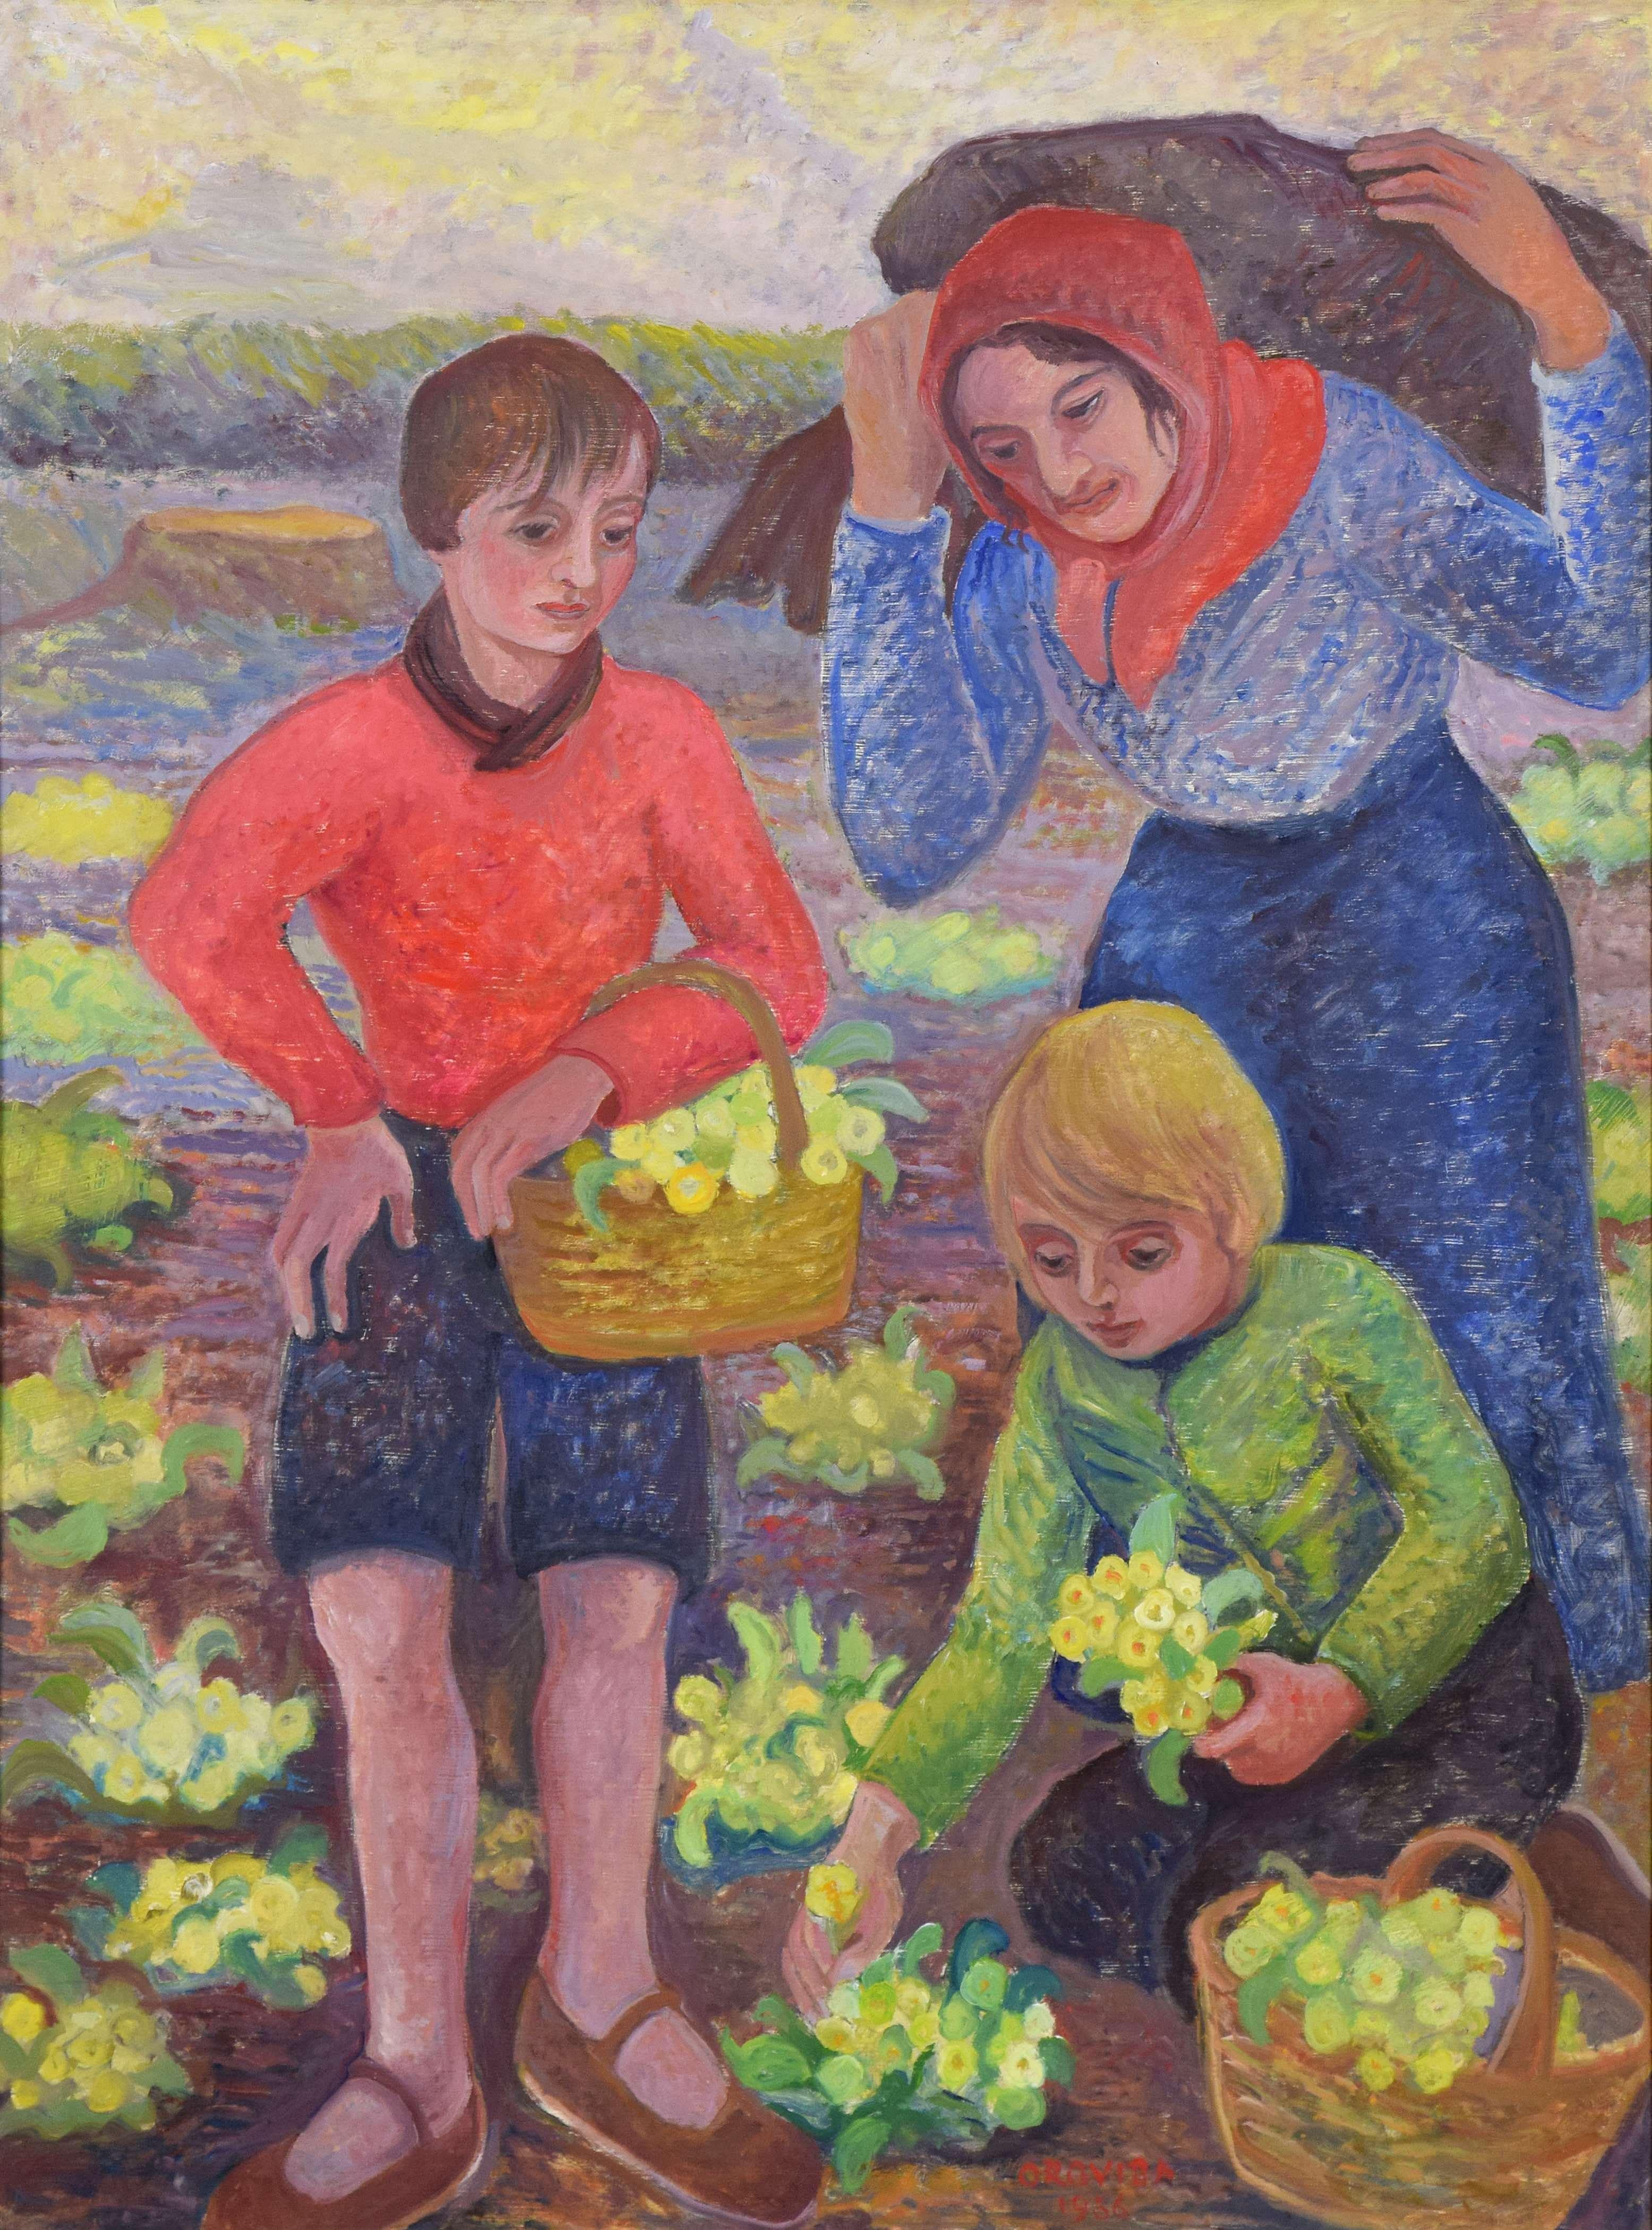 Spring (Primrose Gathering) by Orovida Pissarro - Oil painting